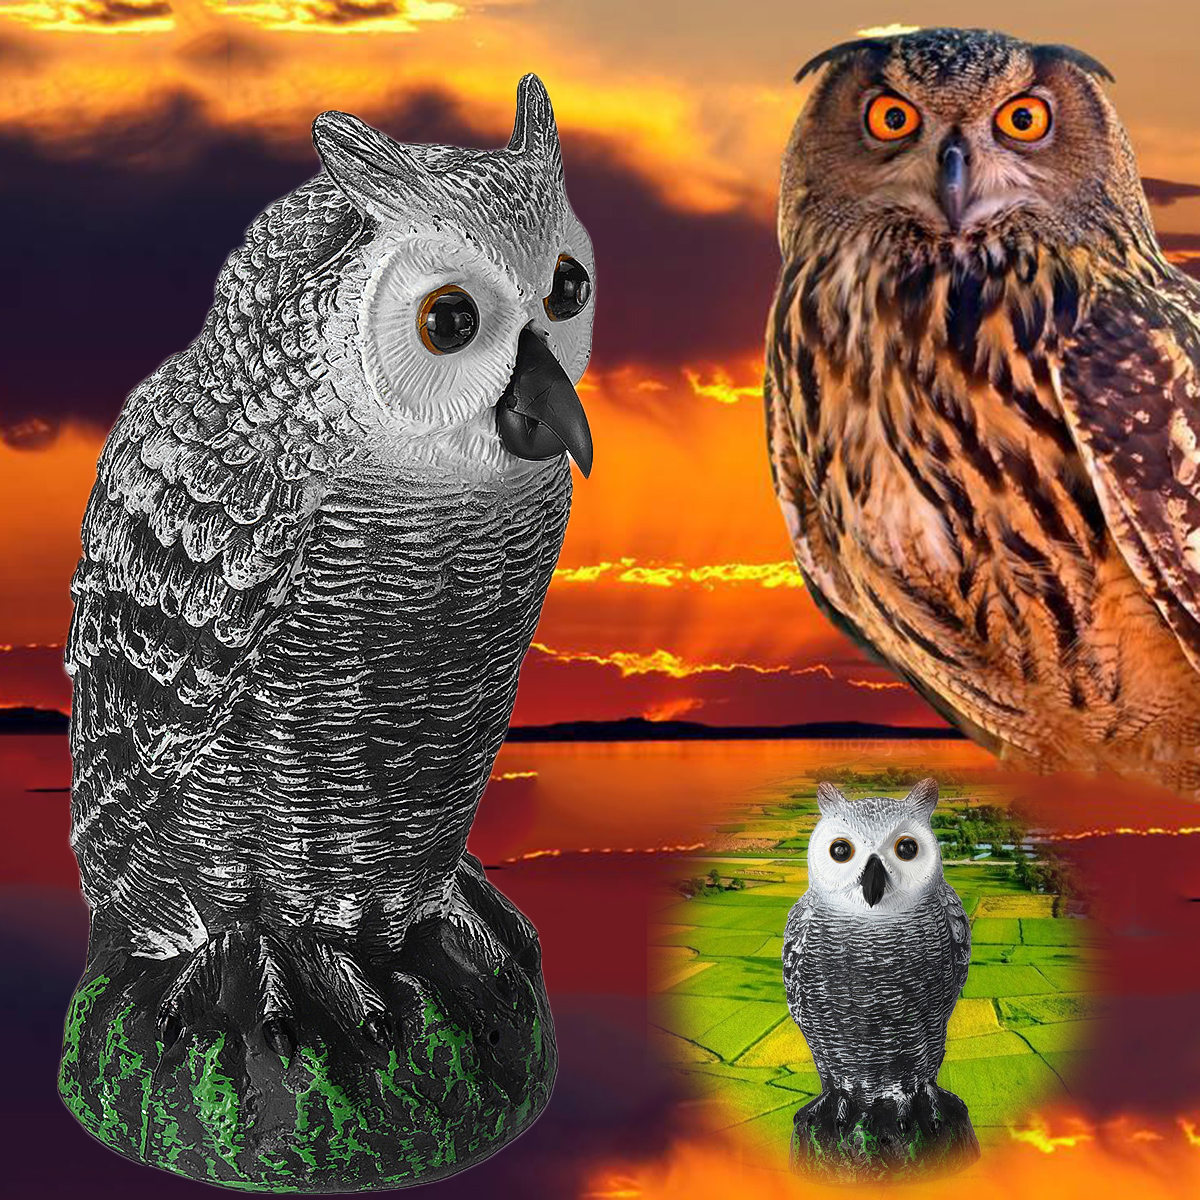 Dummy-Owl-Hunting-Decoy-Glowing-Eyes-Sound-Garden-Decor-1639223-7